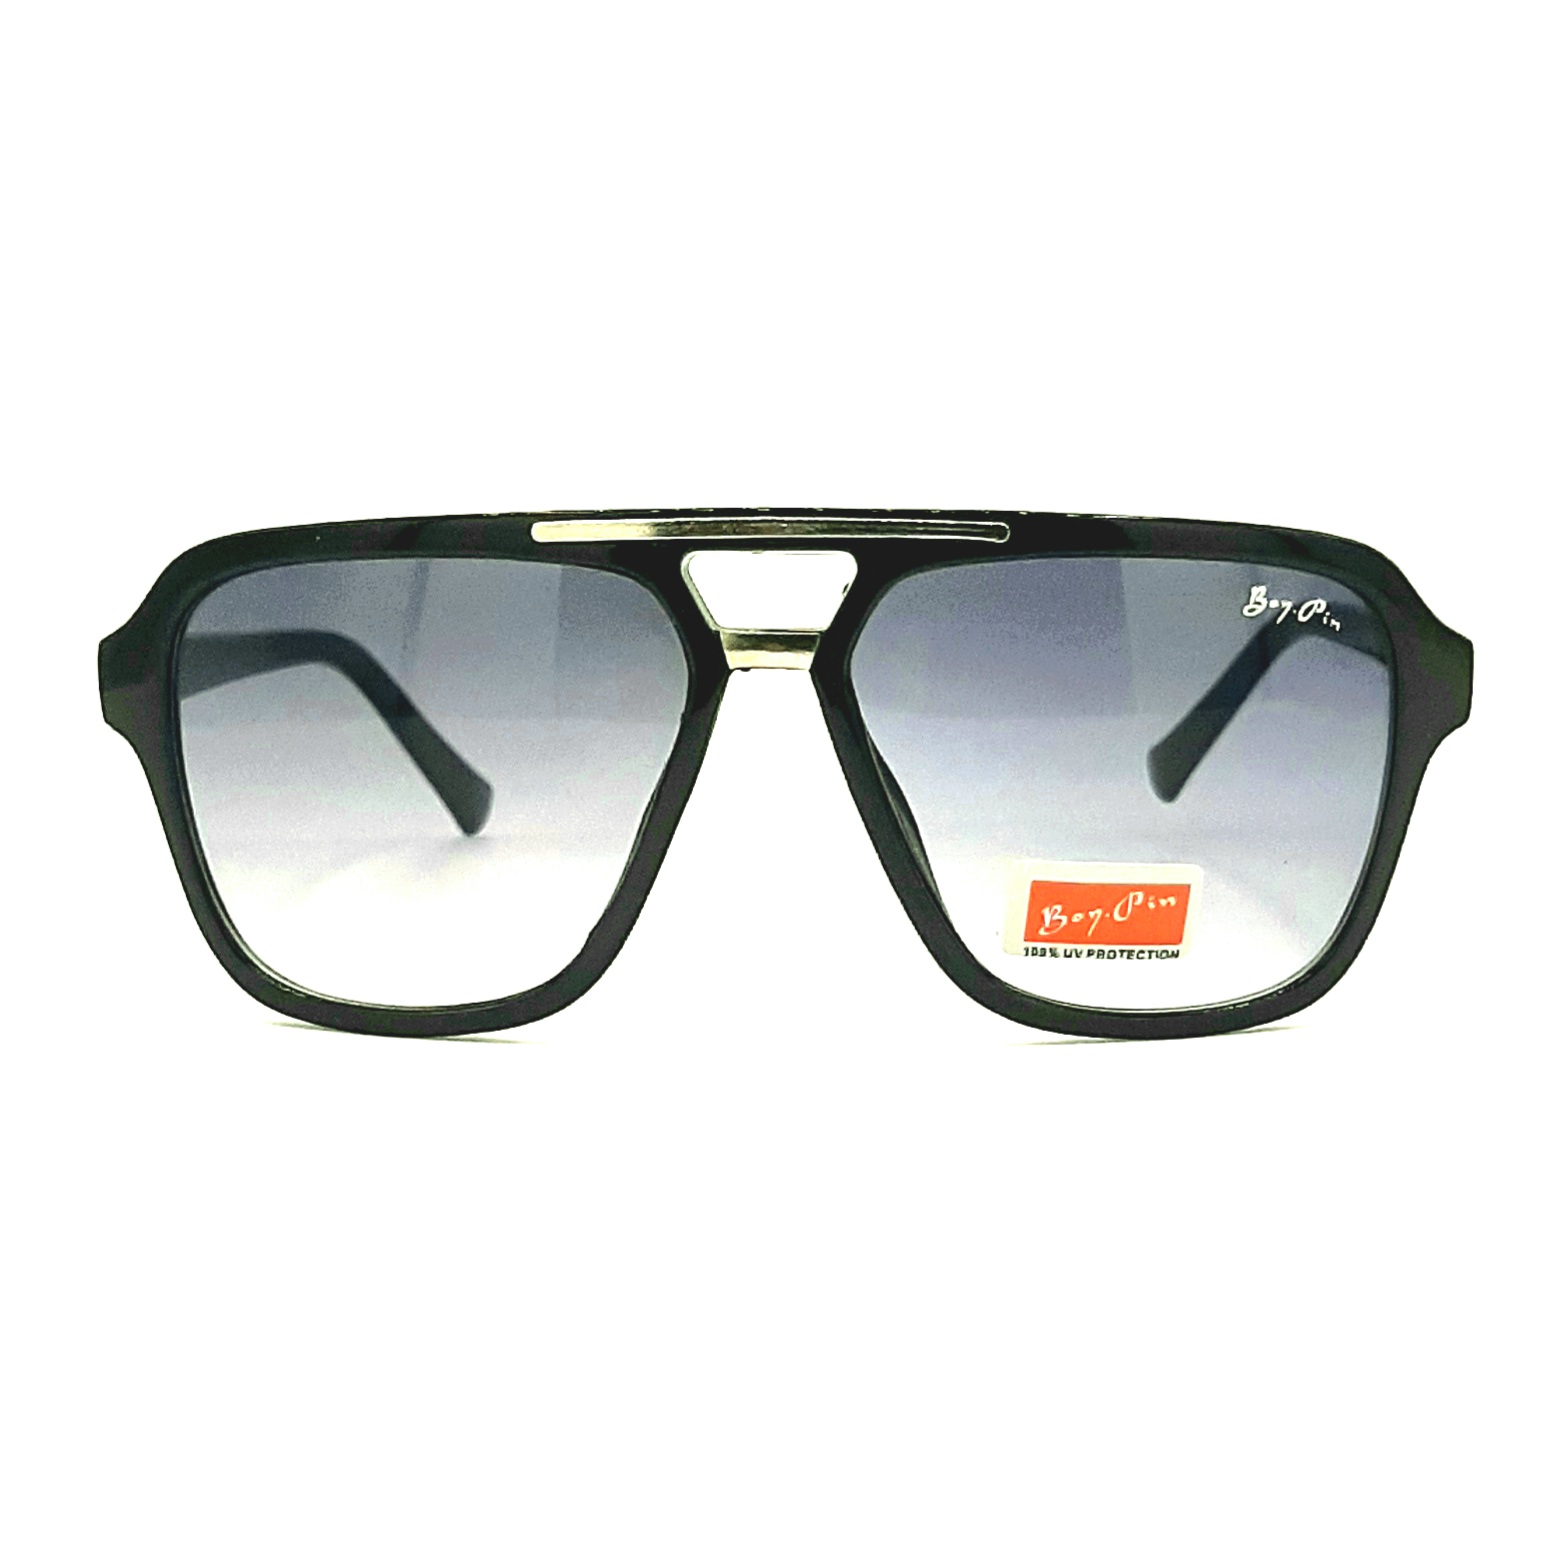 نکته خرید - قیمت روز عینک آفتابی مدل Aa 88005 خرید